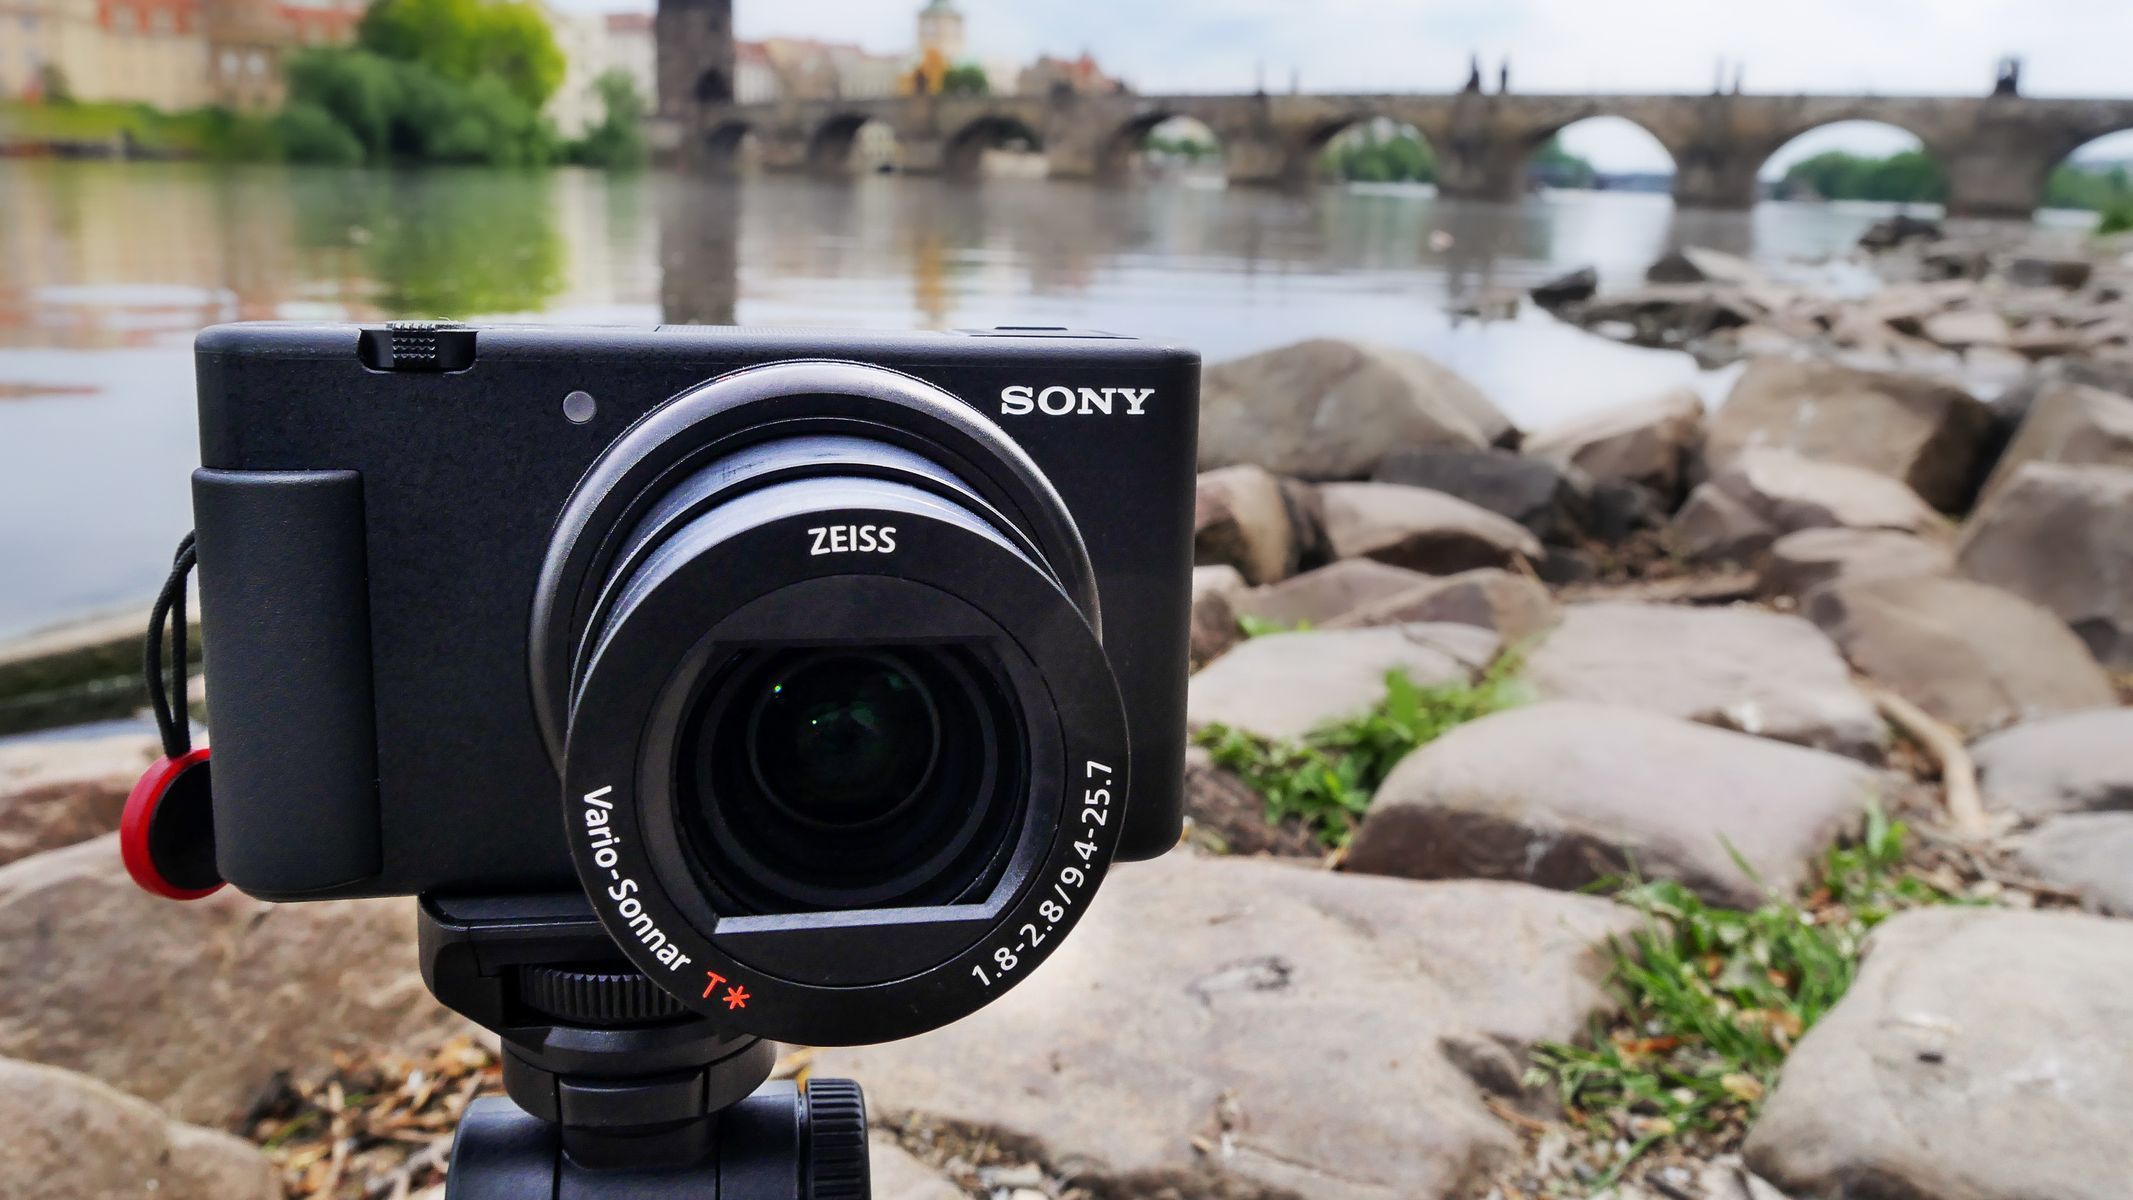 Ukázkové snímky z nového fotoaparátu Sony ZV-1, určeného především pro vloggery